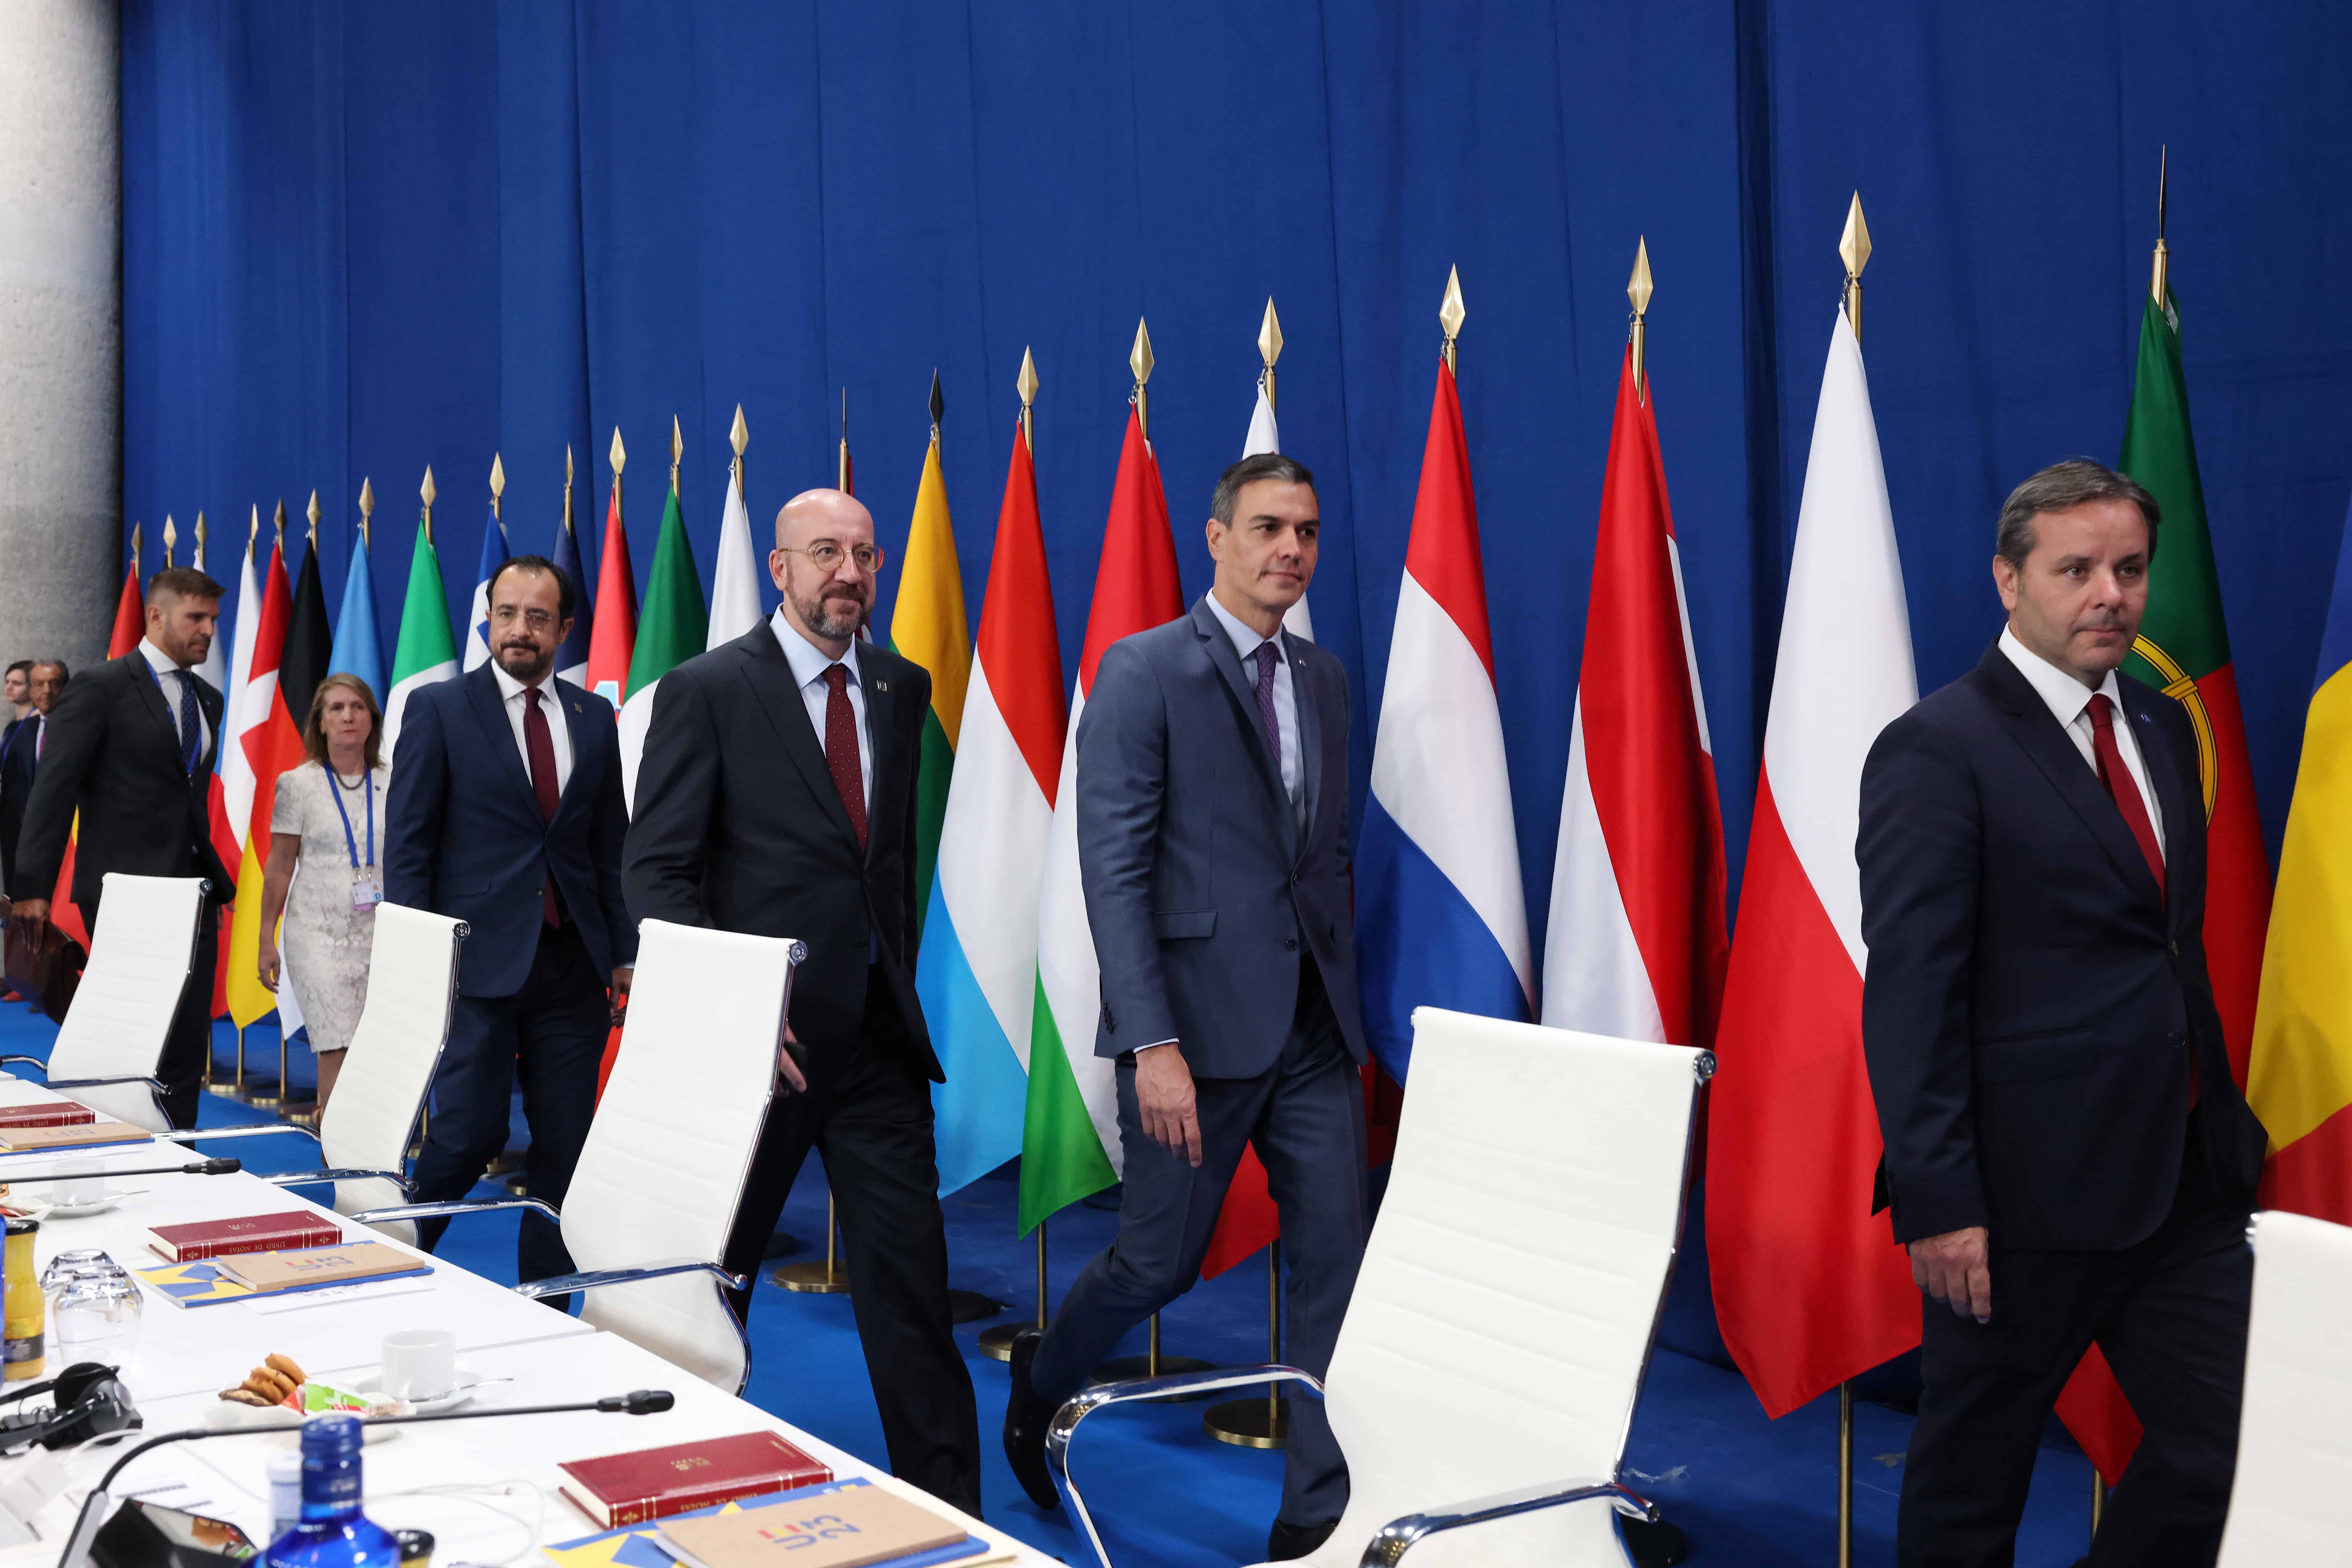 Přečtete si více ze článku Neformální summit v Granadě skončil, Polsko nepodpořilo prohlášení o migraci